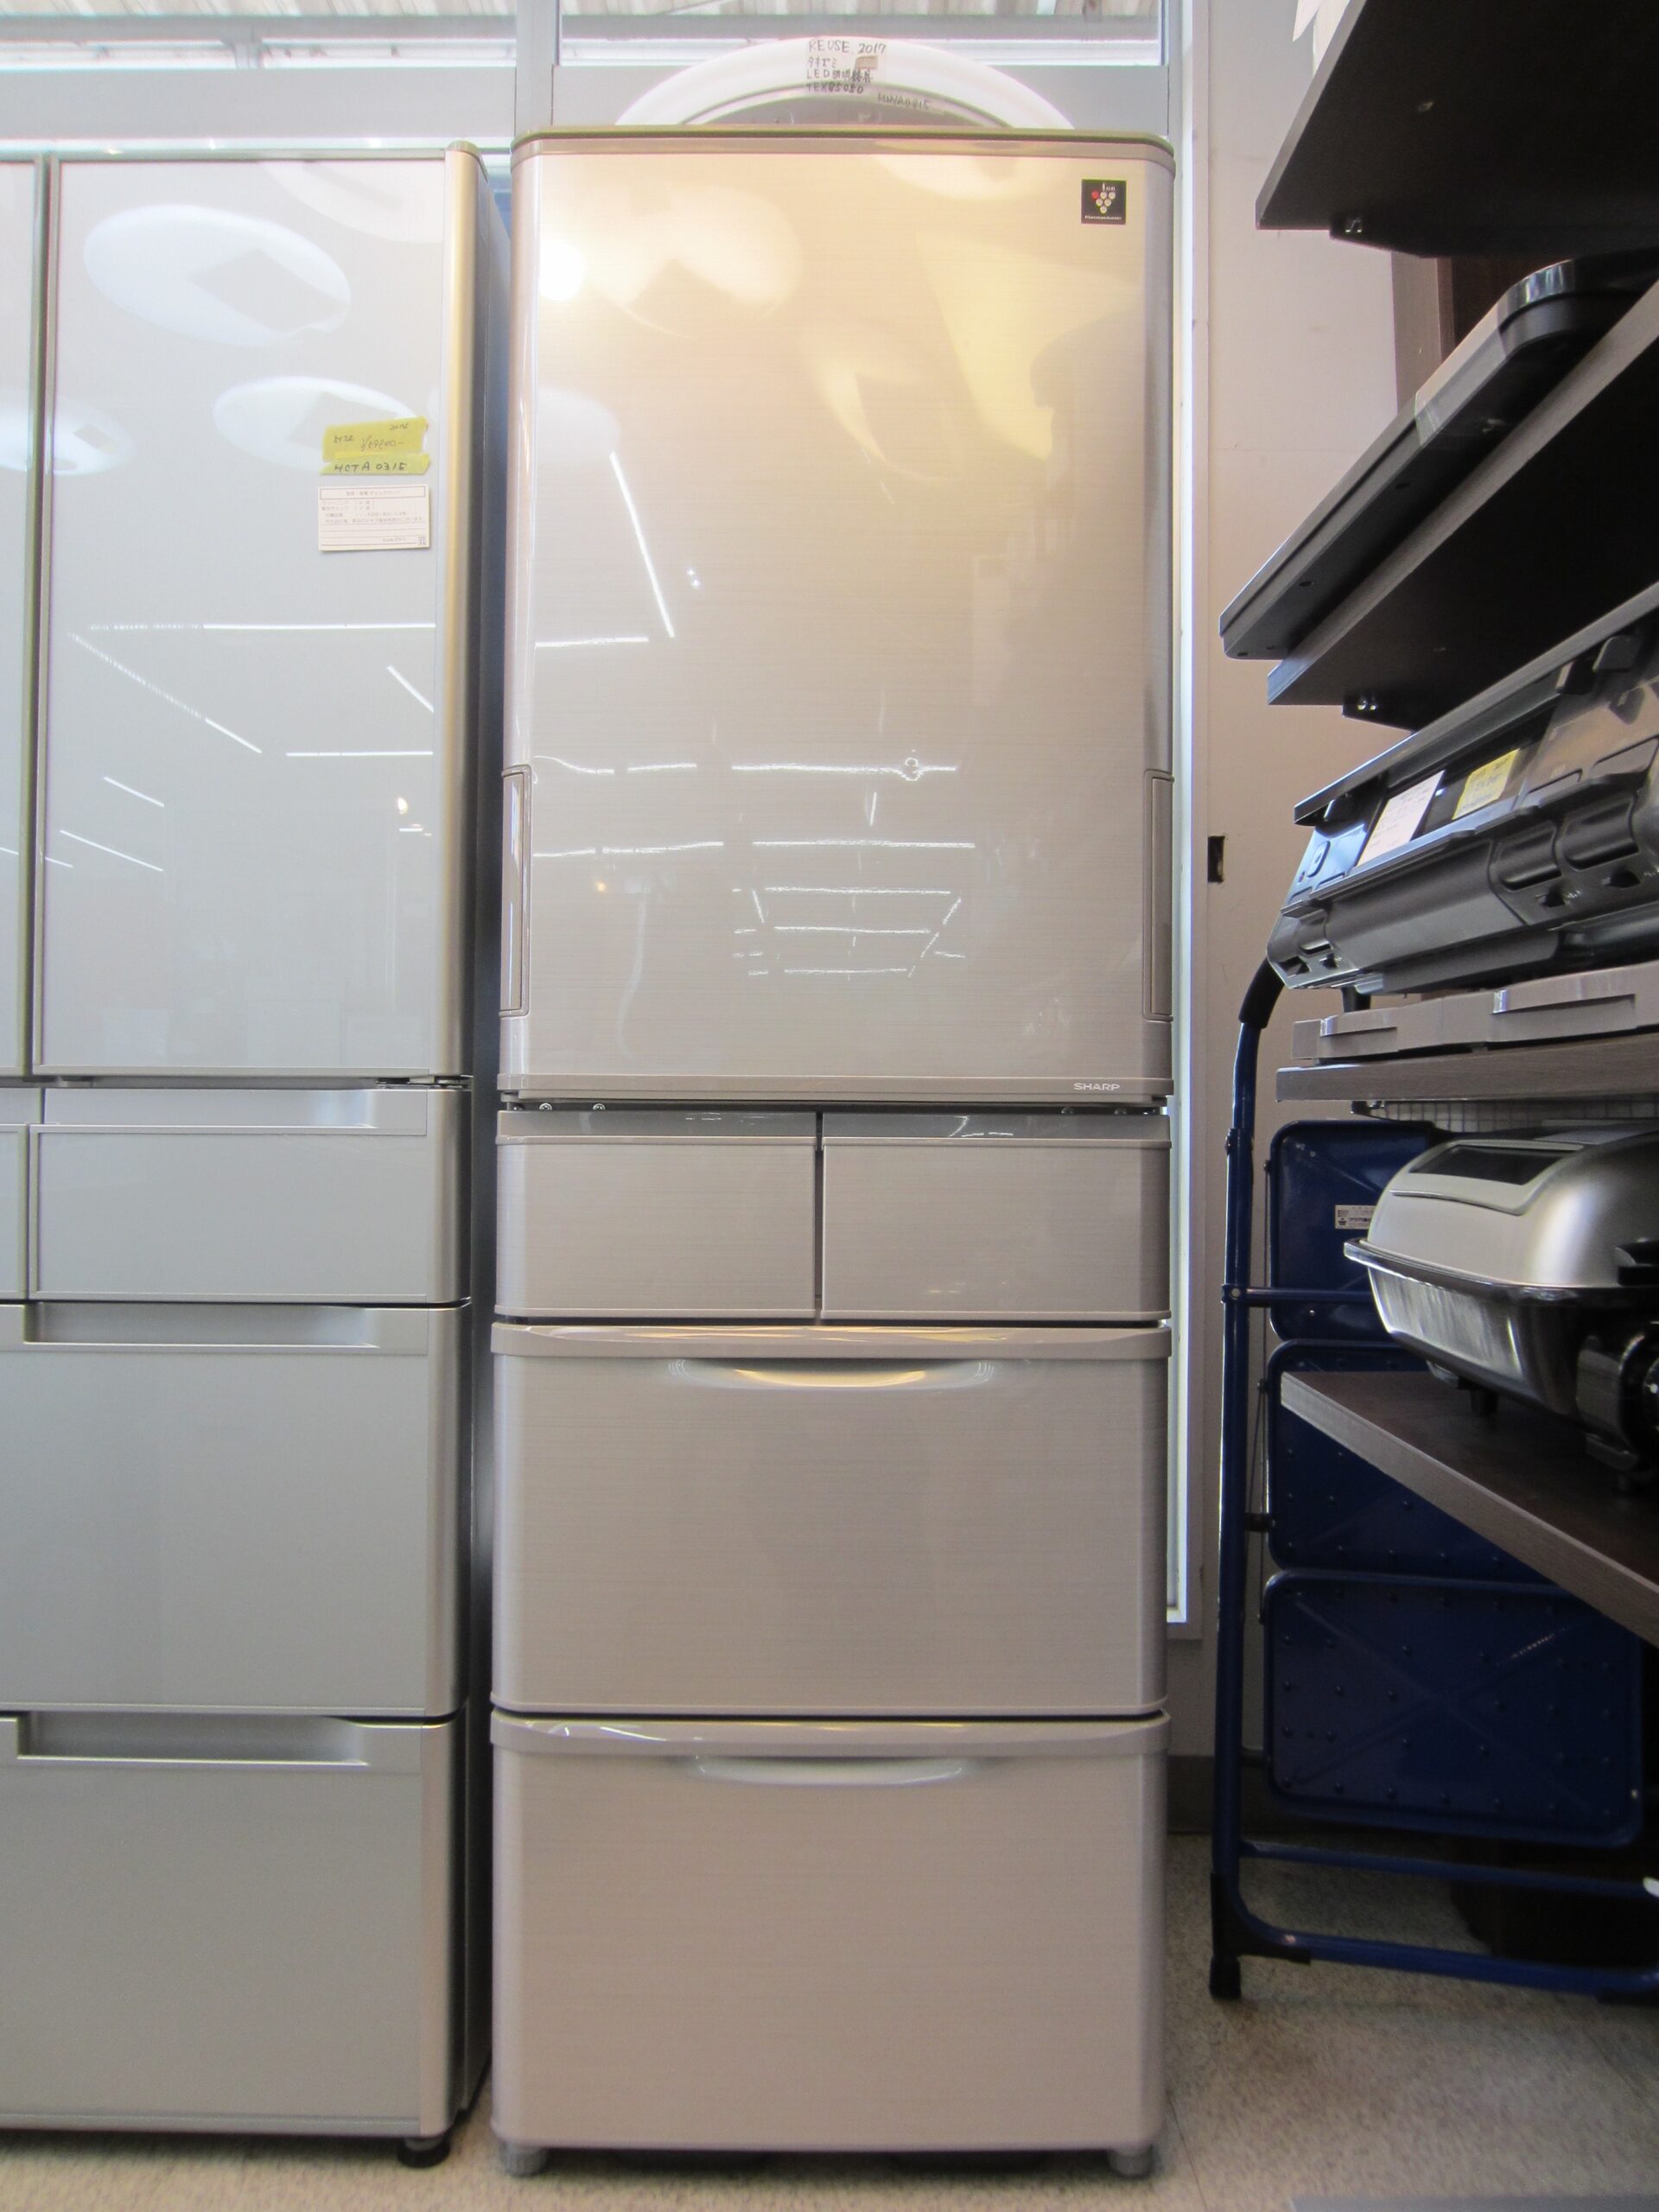 東芝冷蔵庫 自動製氷機能付 GR 42ZW - 冷蔵庫